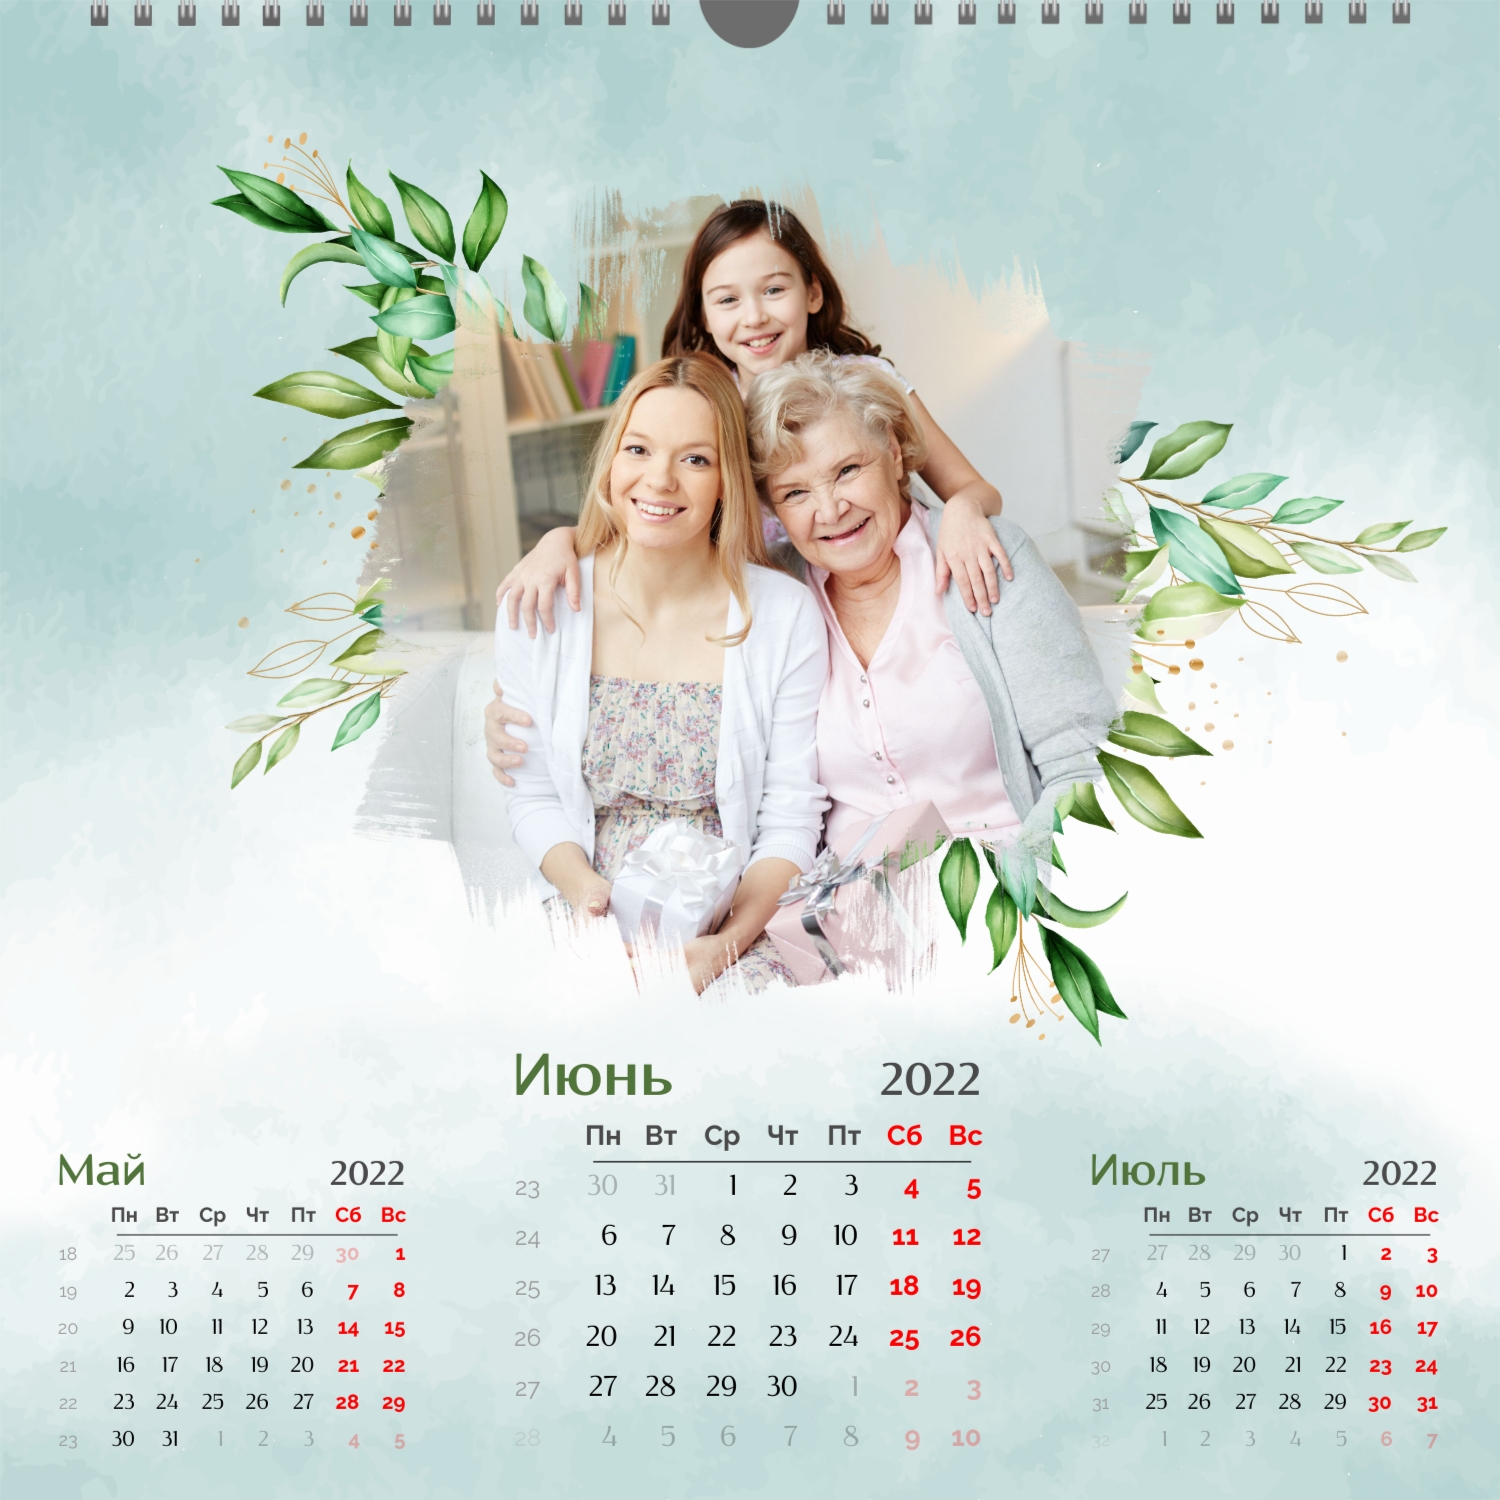 Шаблон календаря с семейными фото | Vizitka.com | ID100107